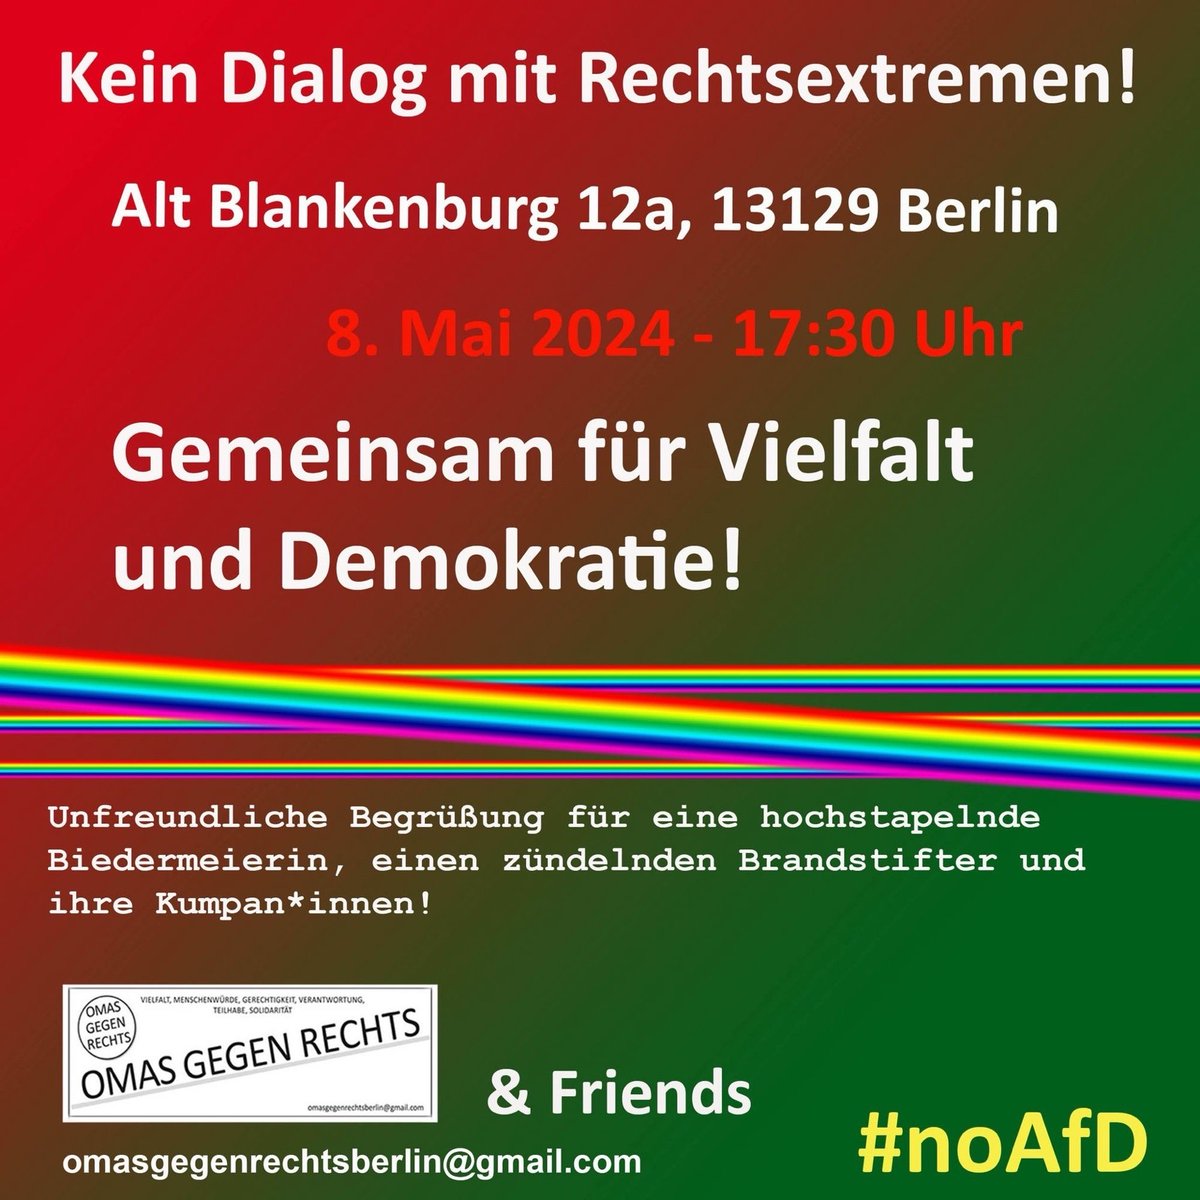 #SaveTheDate #AltBlankenburg in #Berlin  08.05.24 um 17:30

Kein Dialog mit Rechtsextremen!

#WirSindDieBrandmauer #NieWiederIstJetzt #LautGegenRechts #SeiEinMensch #NoAfD